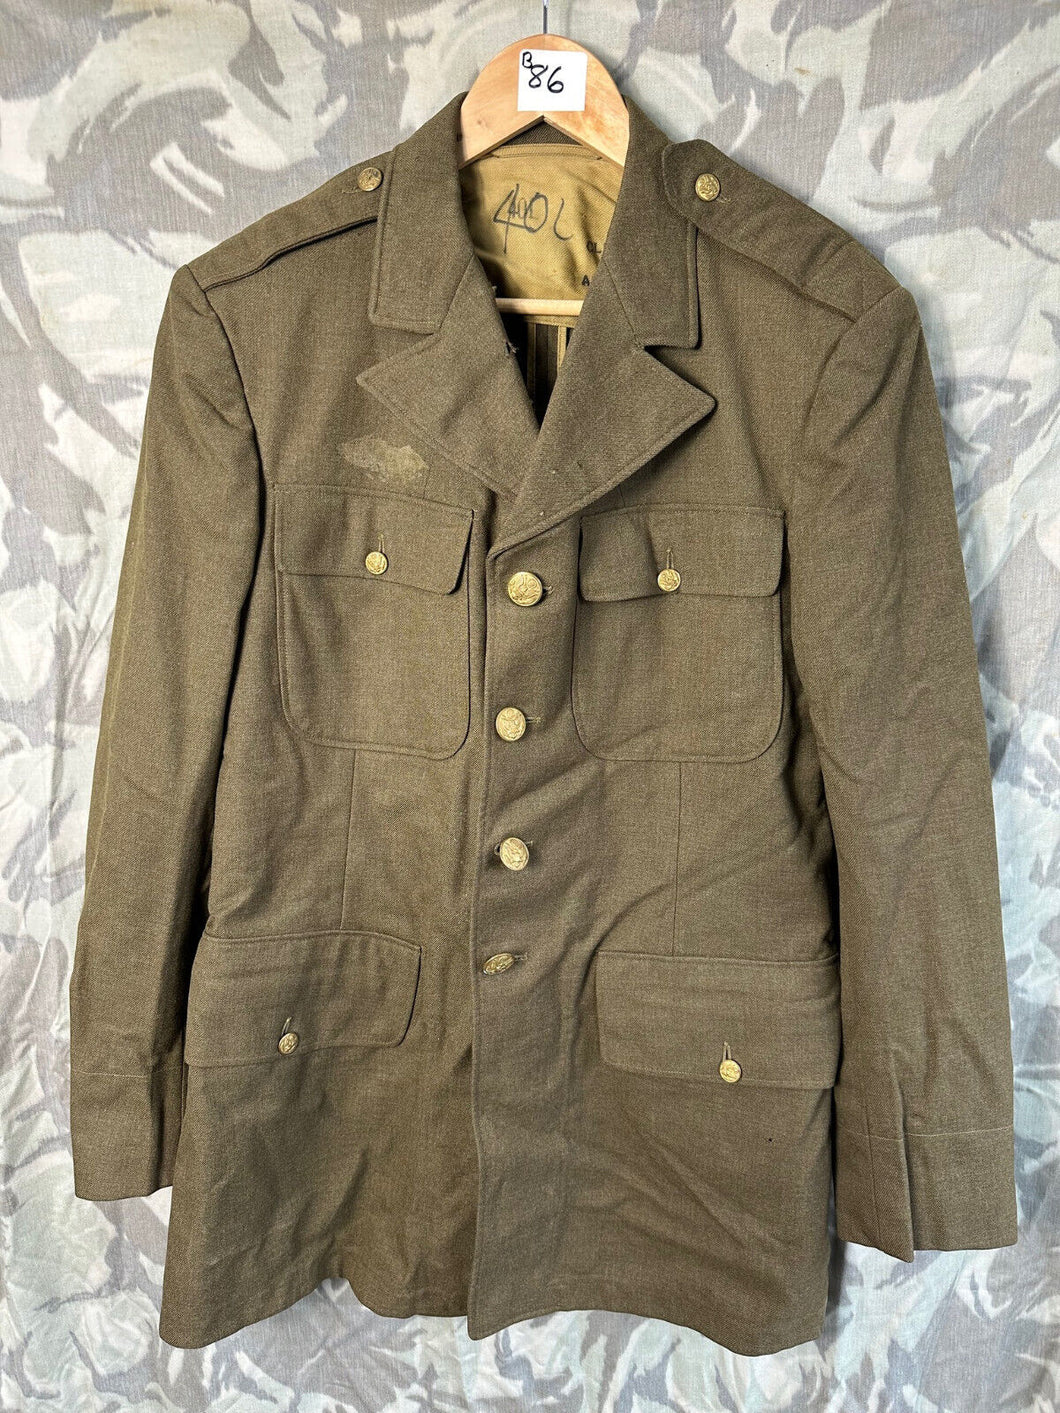 Original US Army WW2 Class A Uniform Jacket - 40